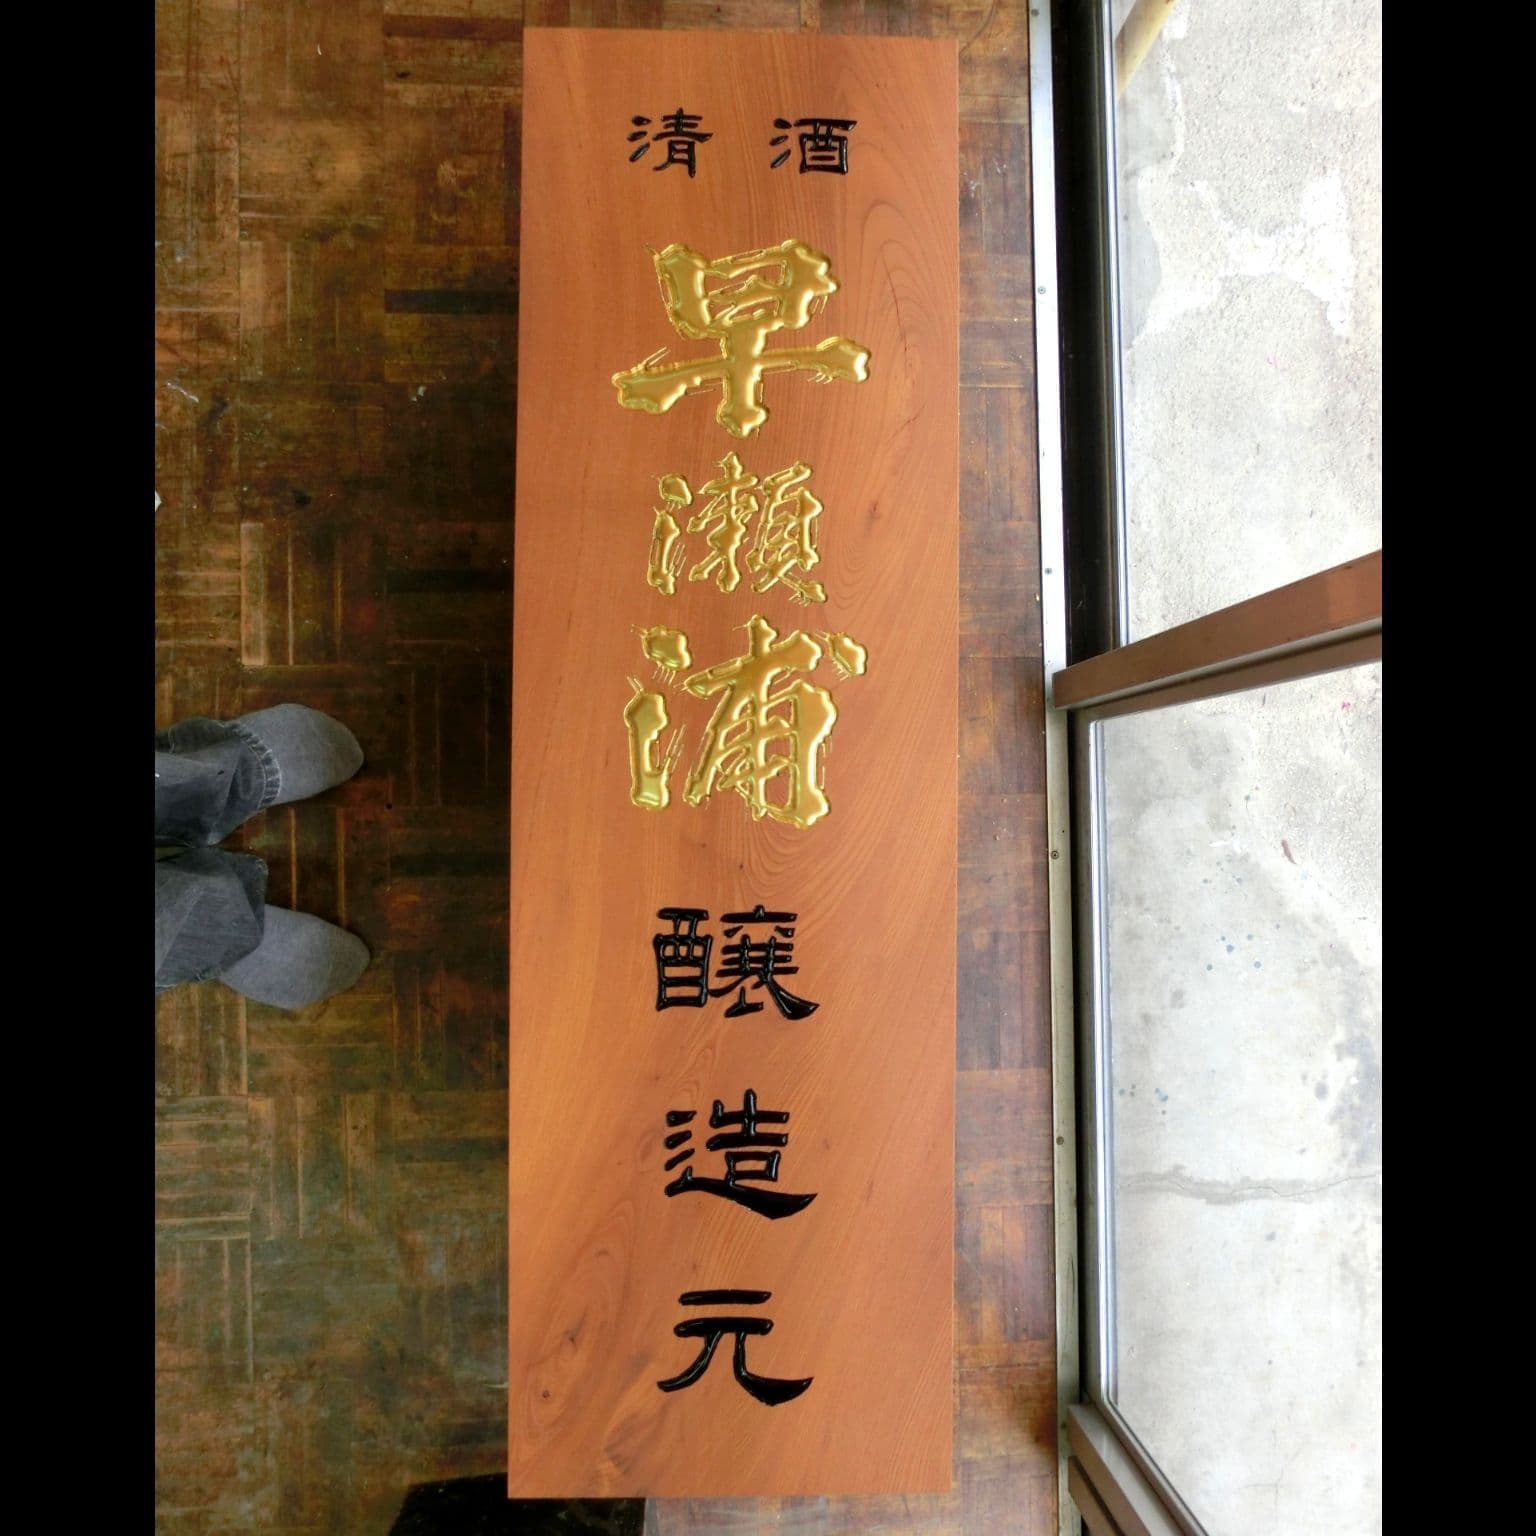 縦長の板にブランド名が金色で彫刻された日本酒蔵元の看板